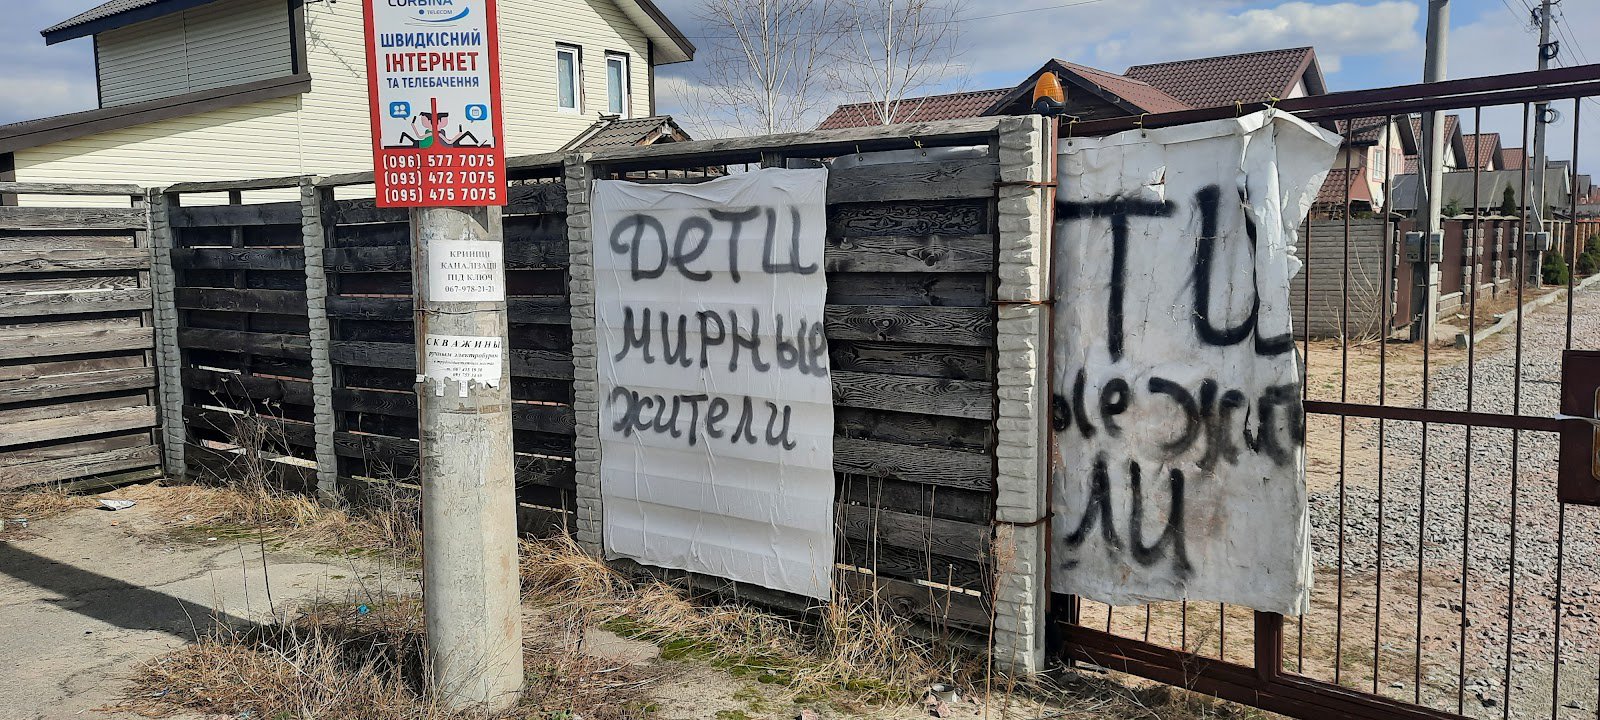 На воротах котеджного містечка був напис із попередженням, що тут цивільні та діти, але росіян це не зупинило.